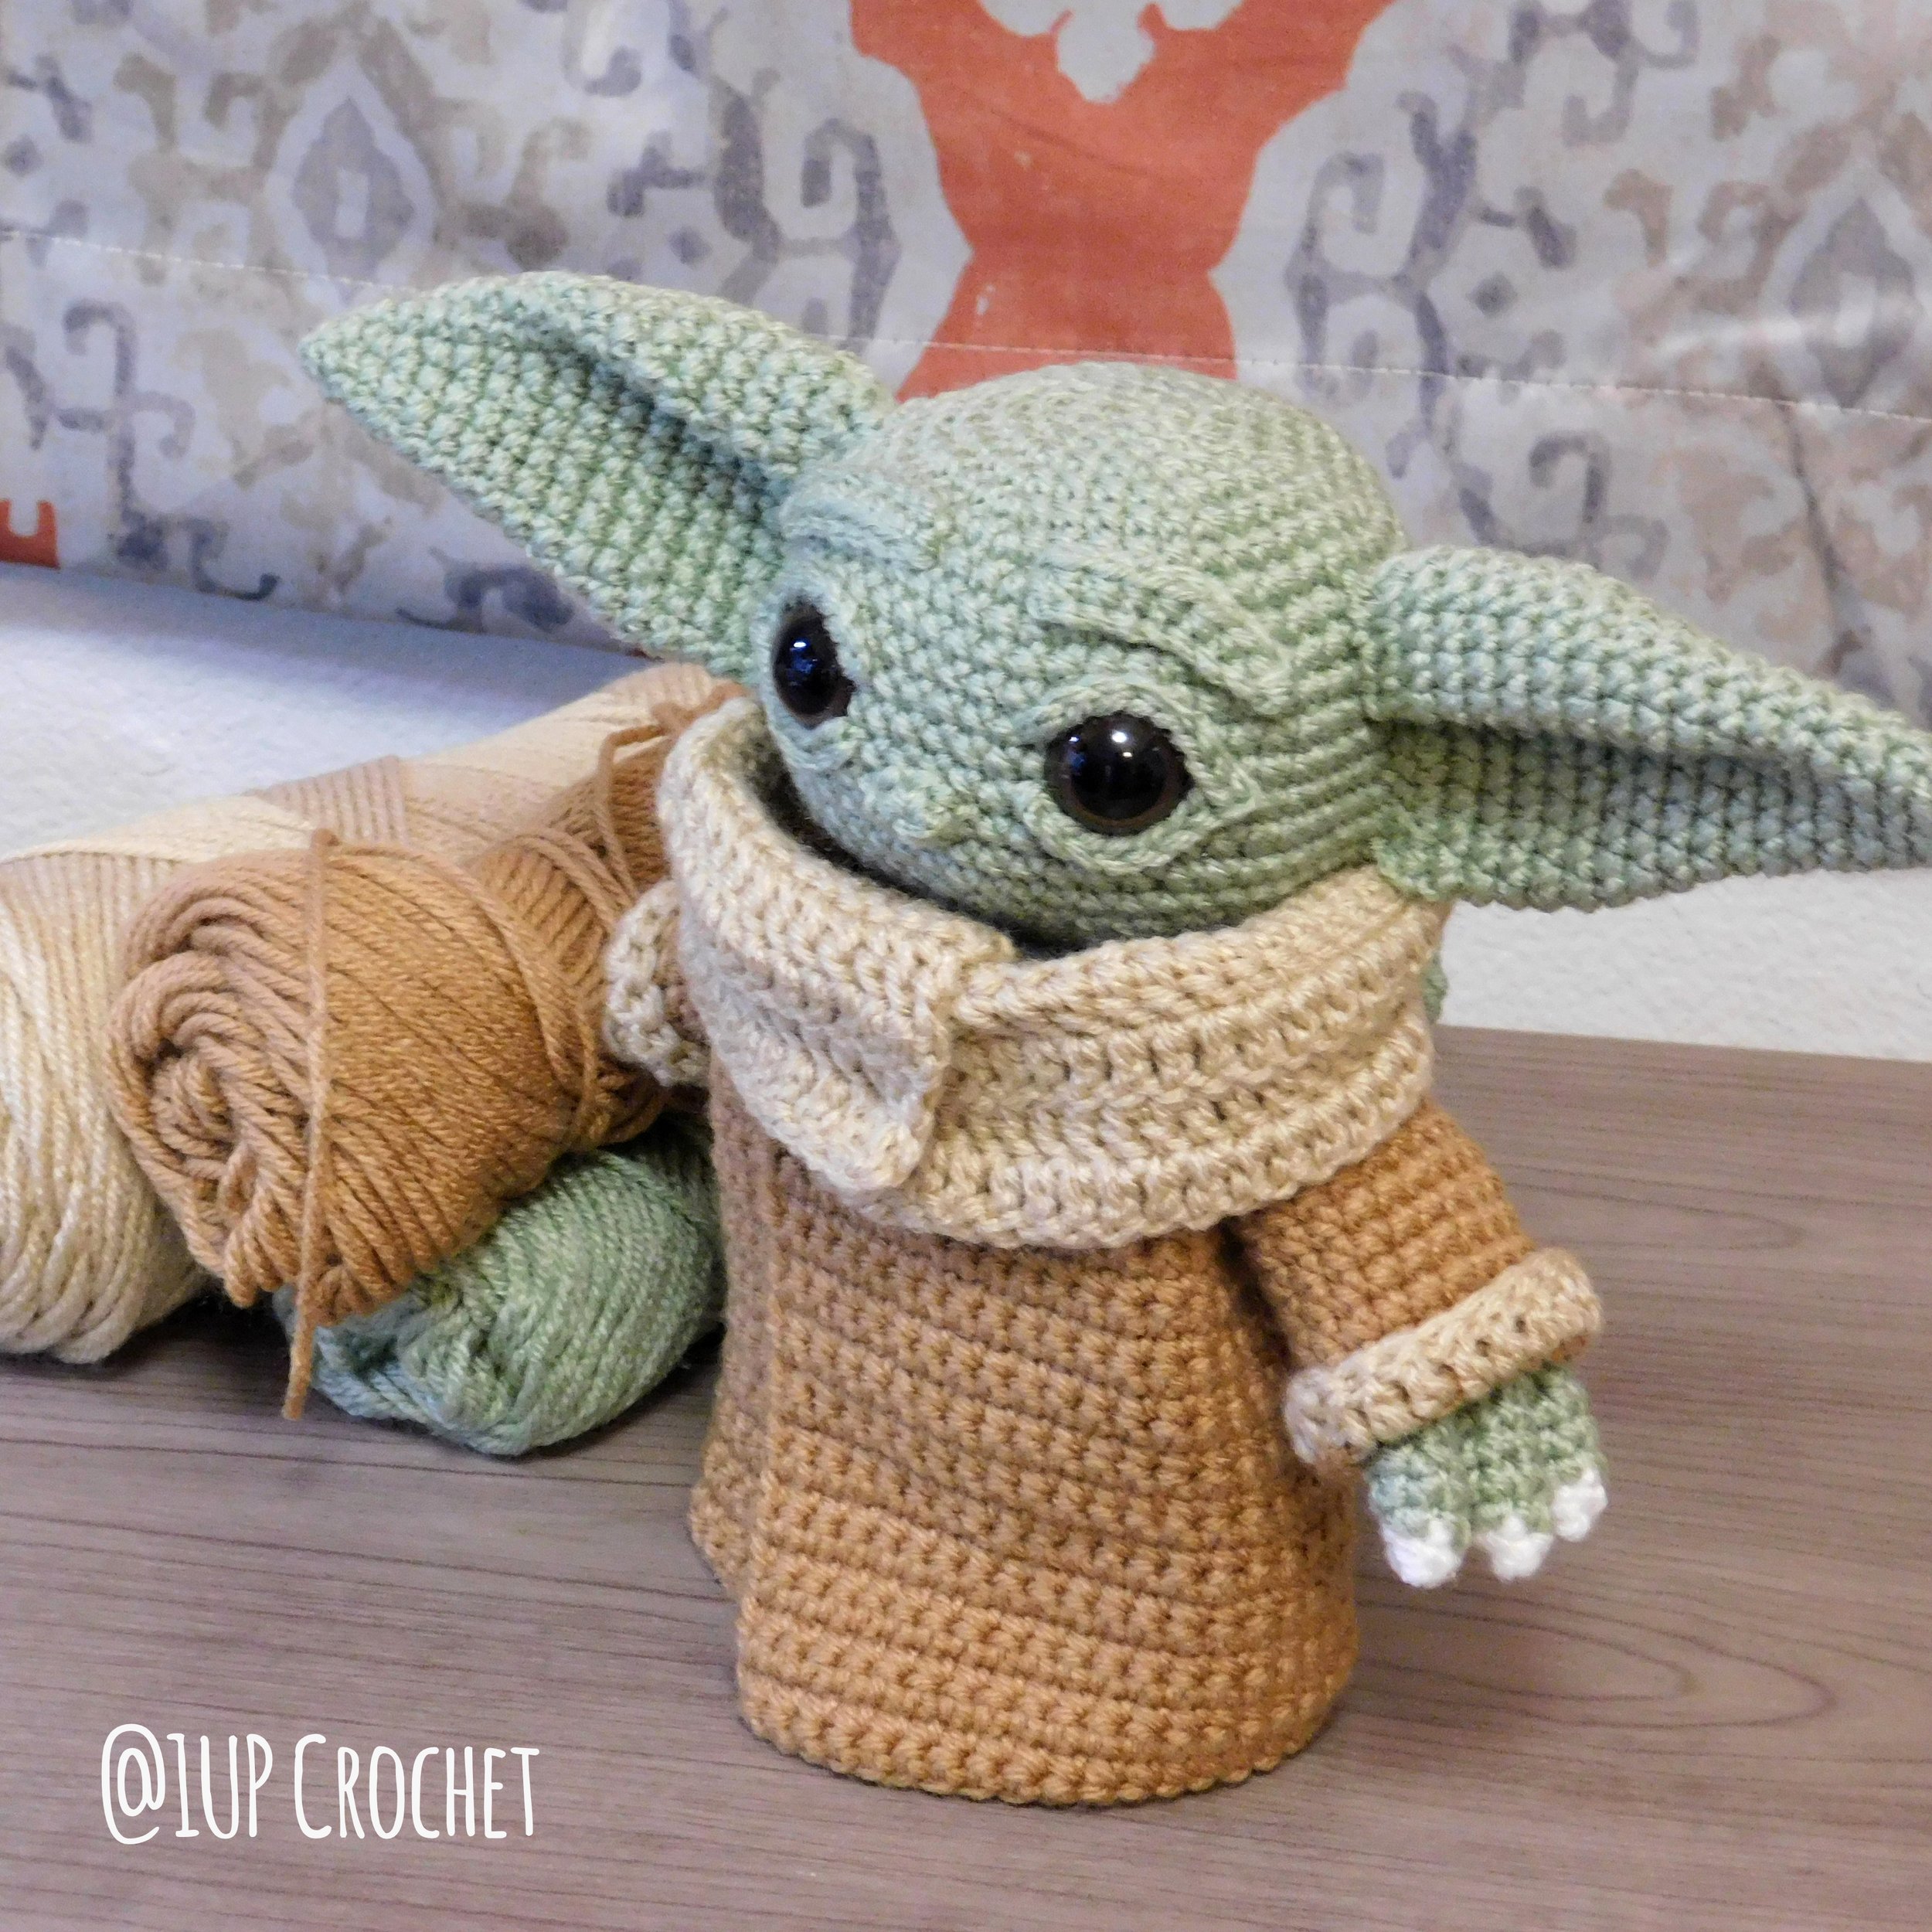 Crochet lovey Baby Alien Crochet  Ragdoll Lovey Pal crochet Amigurumi yoda type doll